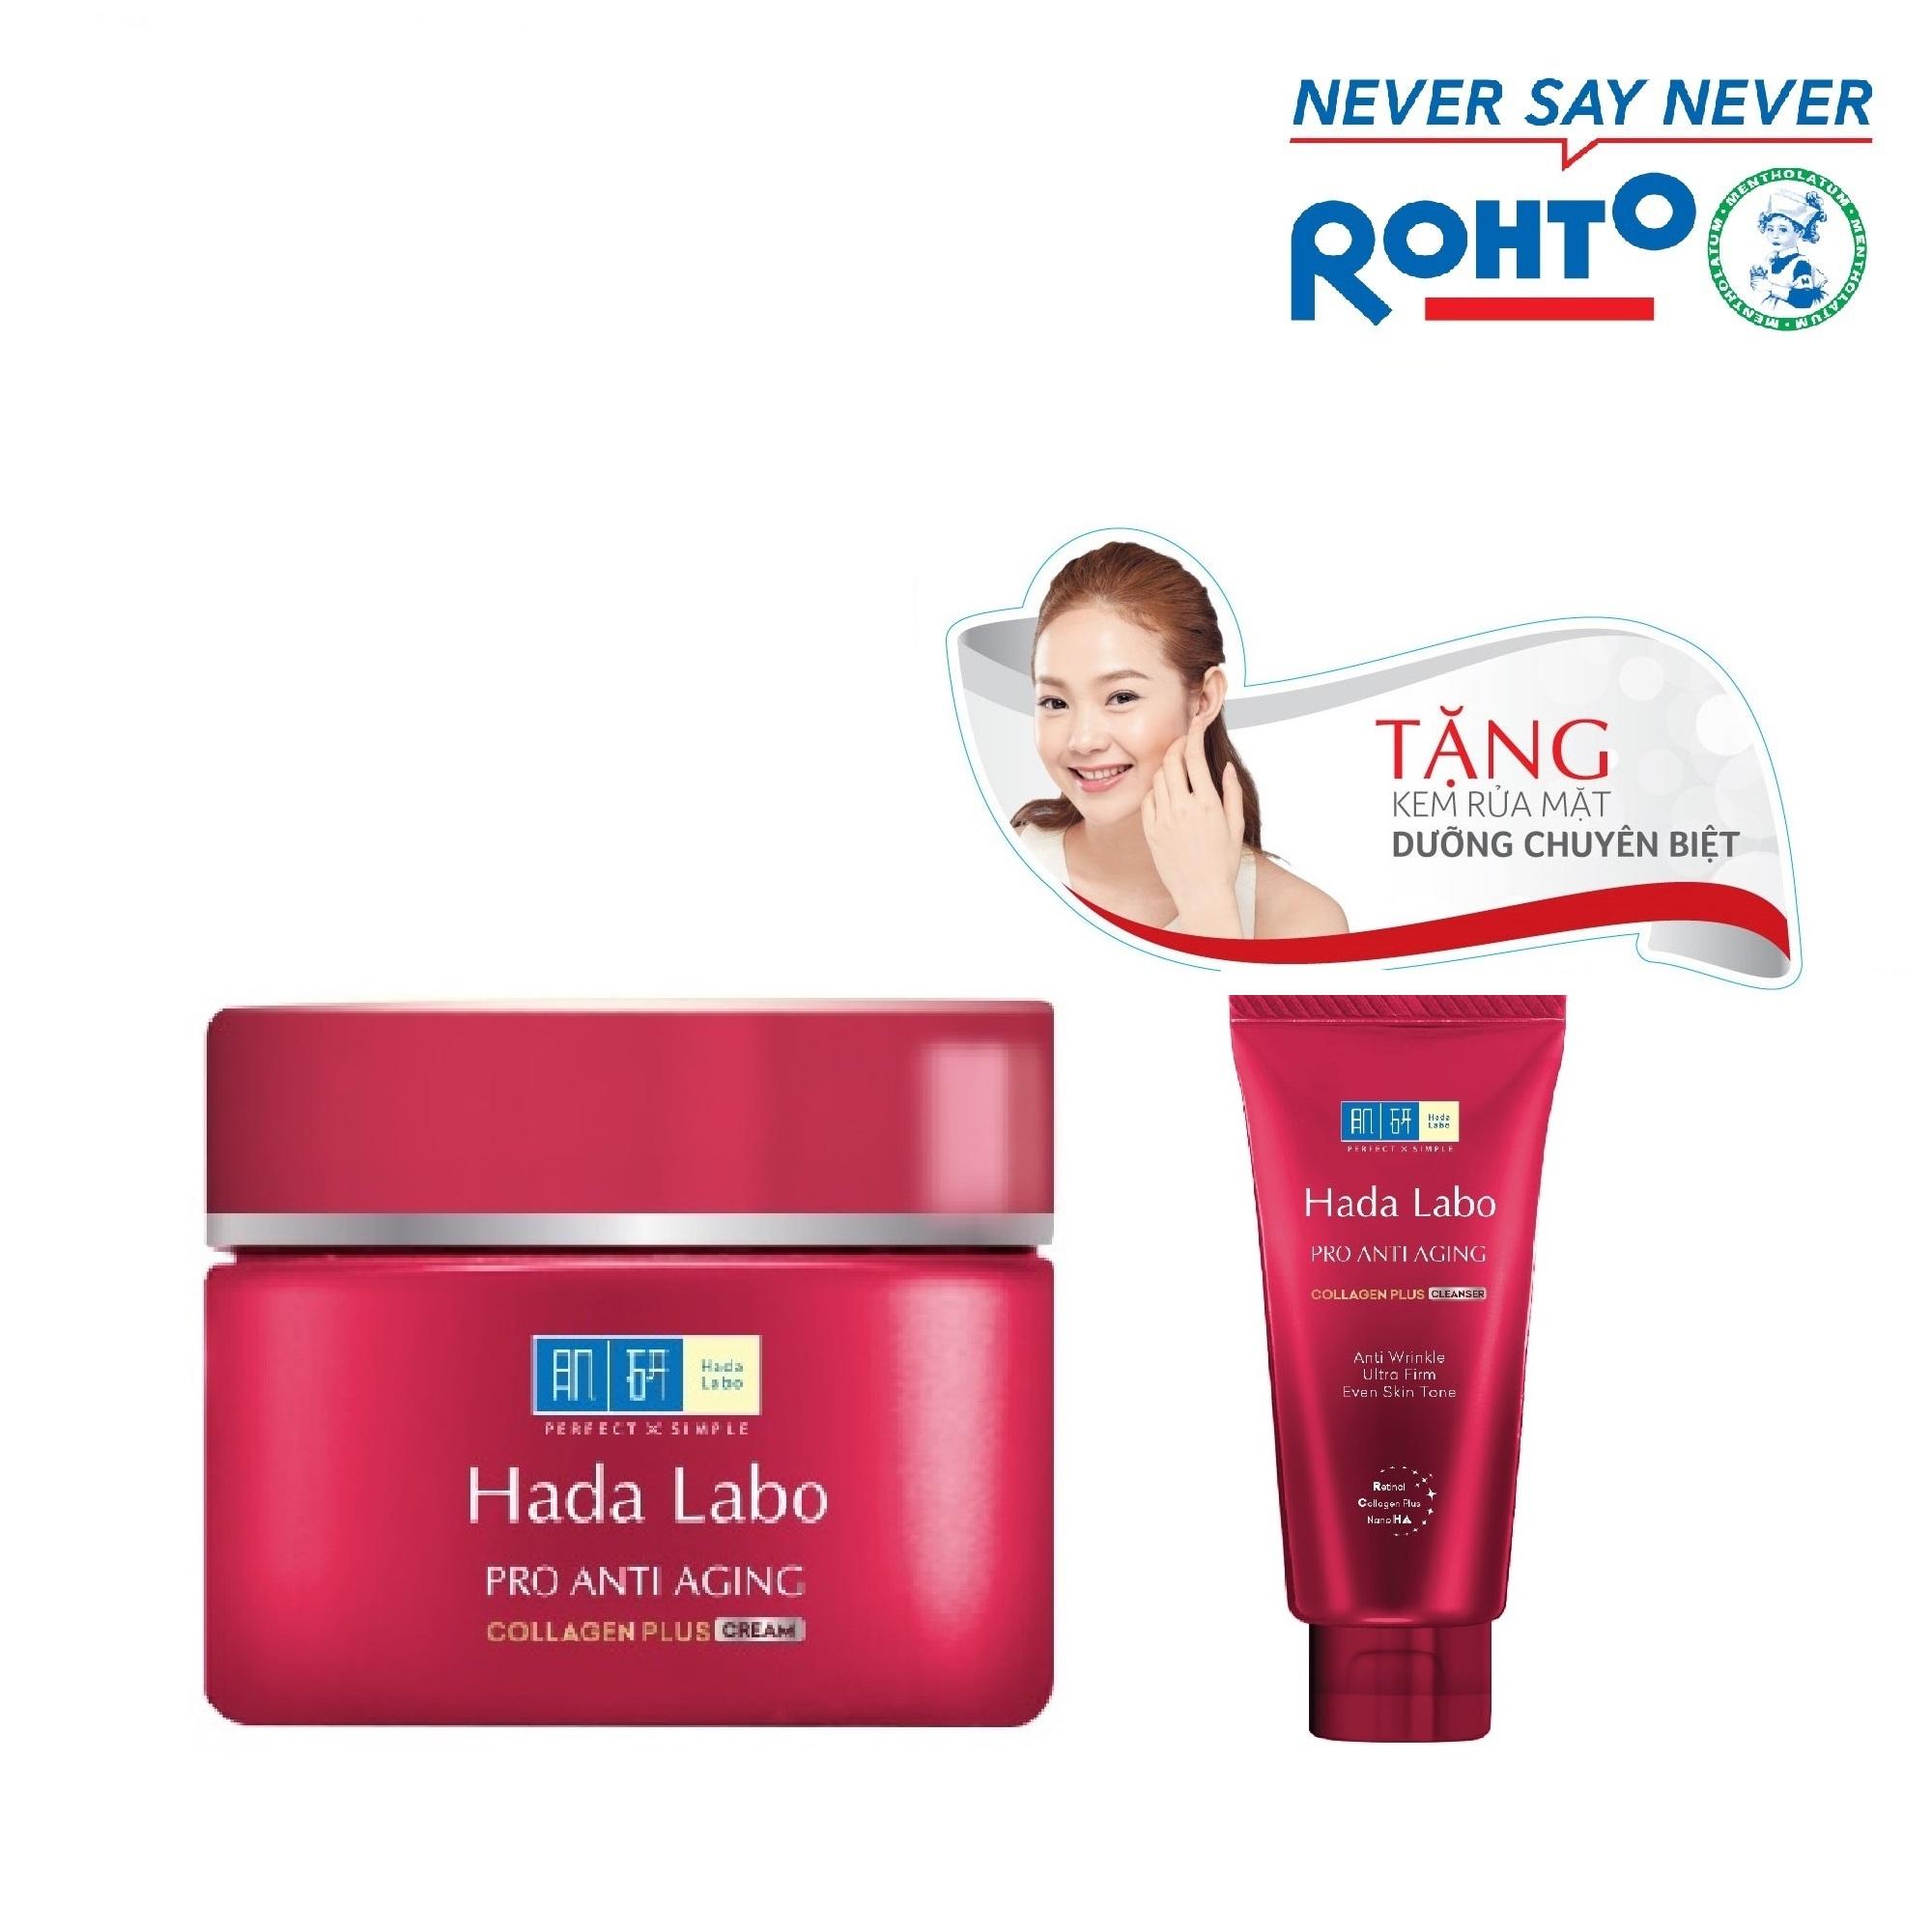 Kem dưỡng chuyên biệt chống lão hóa Hada Labo Pro Anti Aging Cream 50g + Tặng Kem rửa mặt Hada...